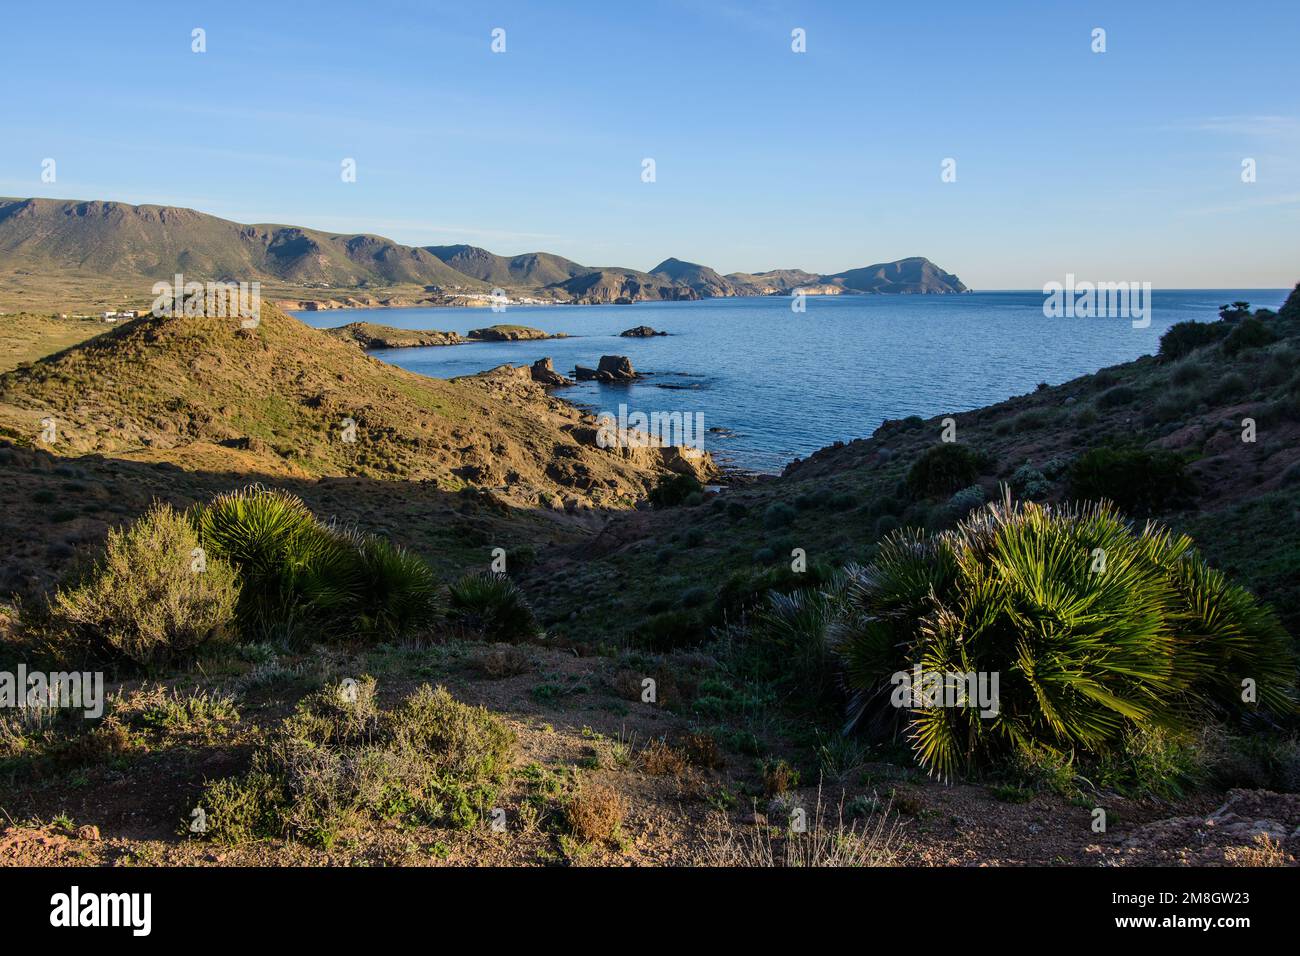 Seascape from Cabo de Gata coastal path south of La Isleta del Moro, Almeria province, Spain. View from near El Embacadero. Stock Photo